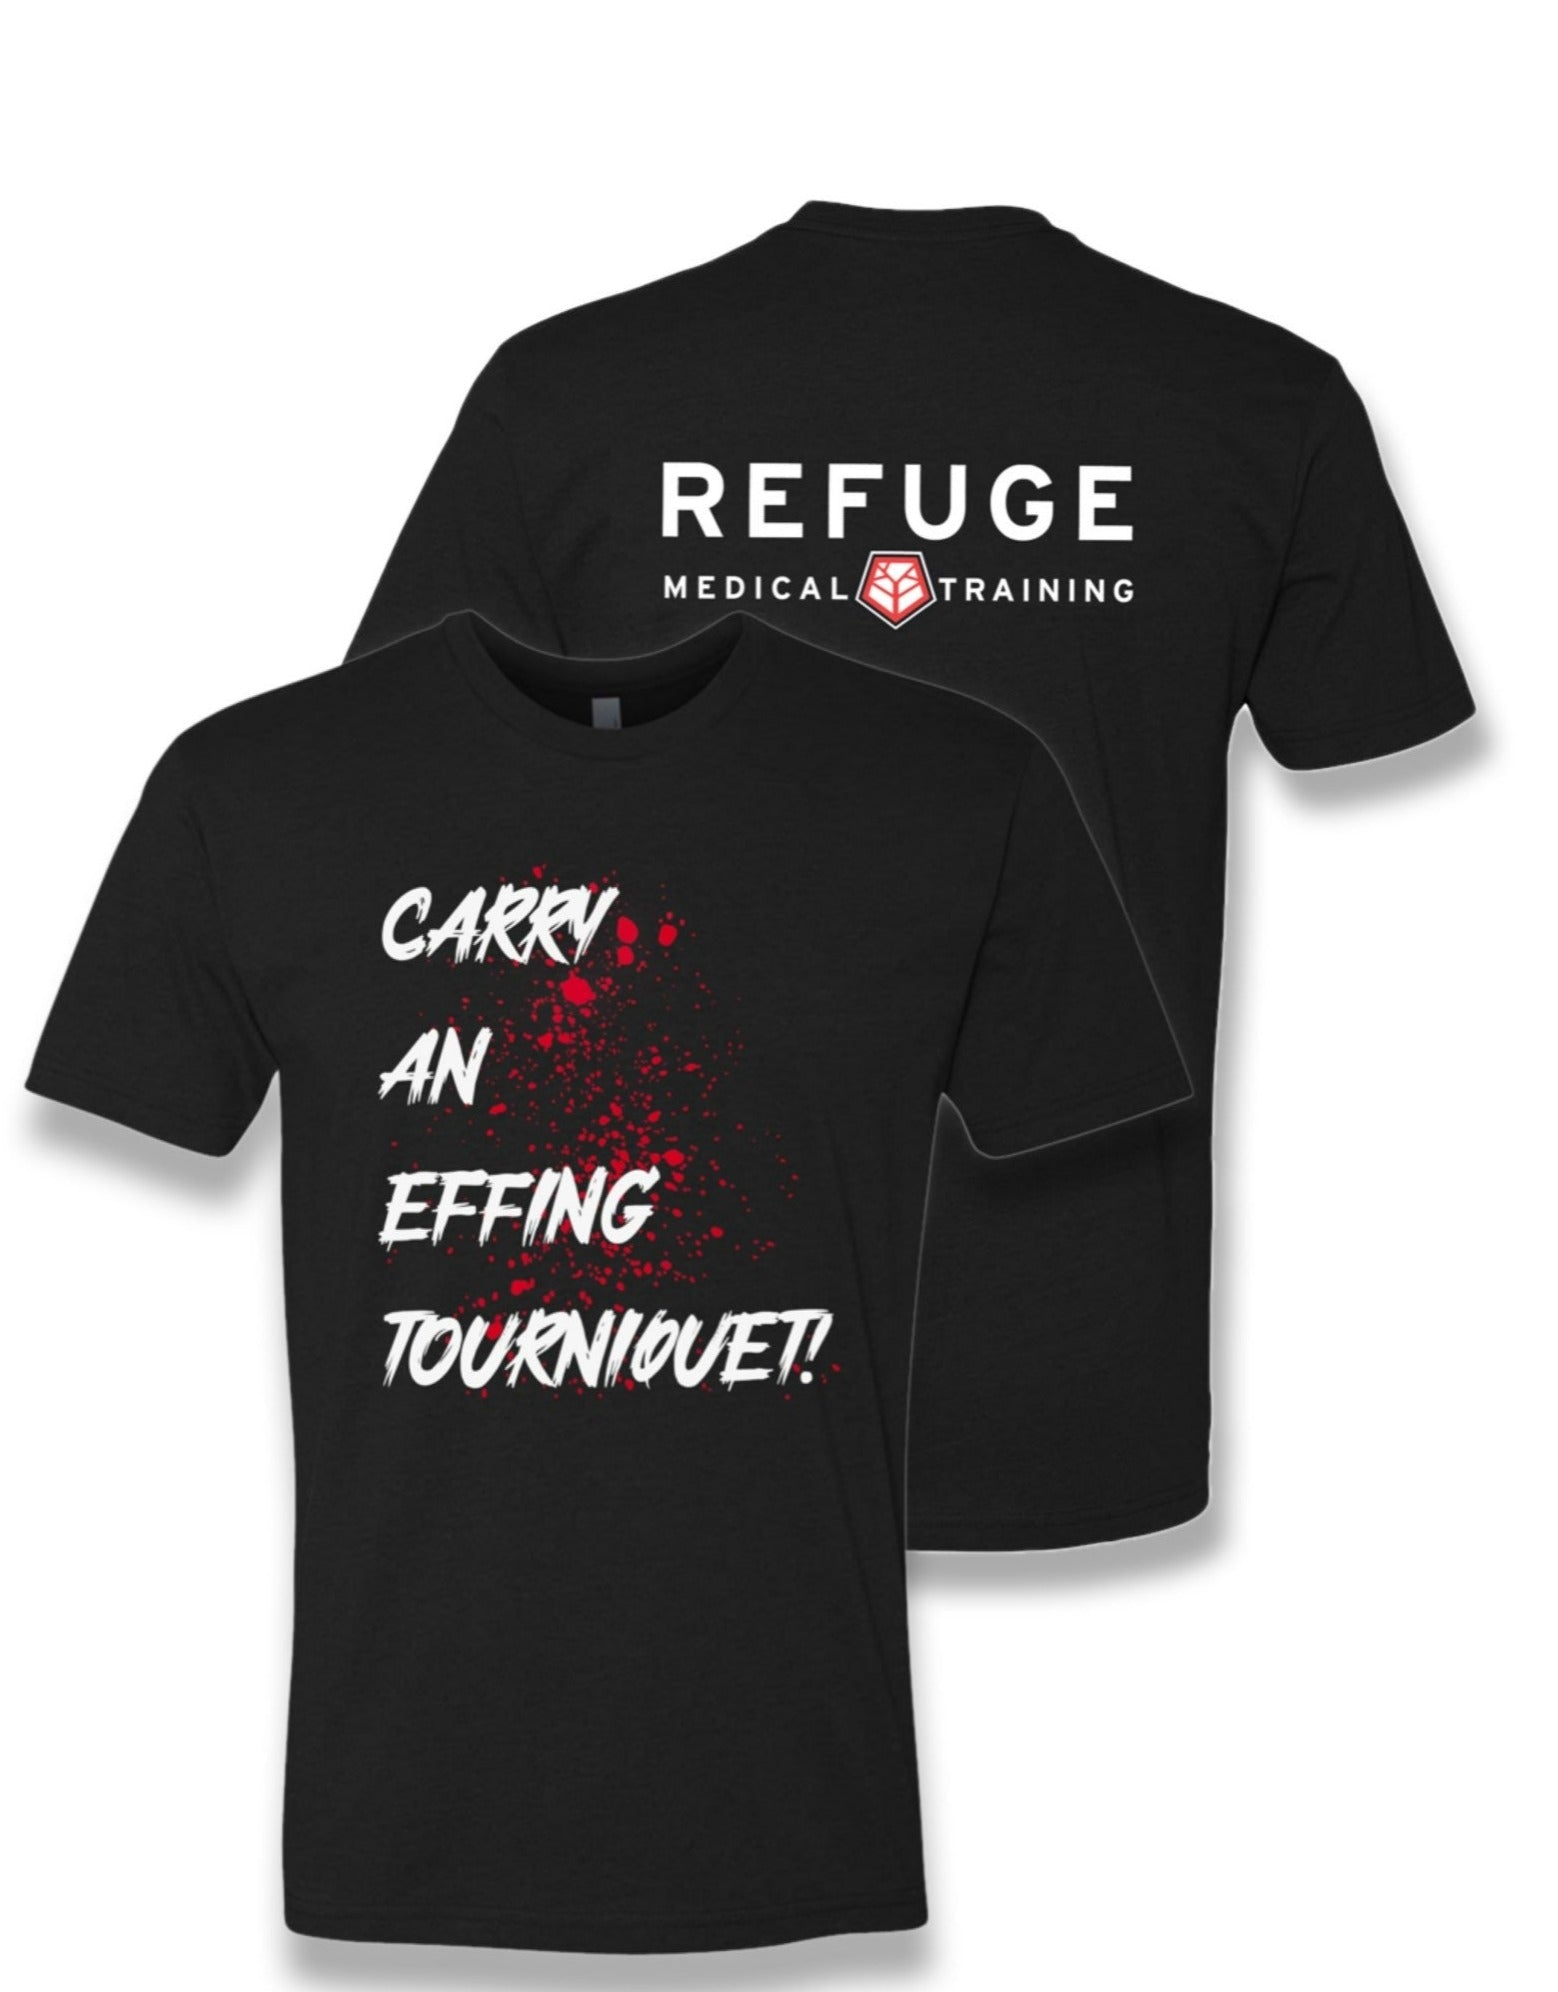 Carry an effing Tourniquet T-shirt